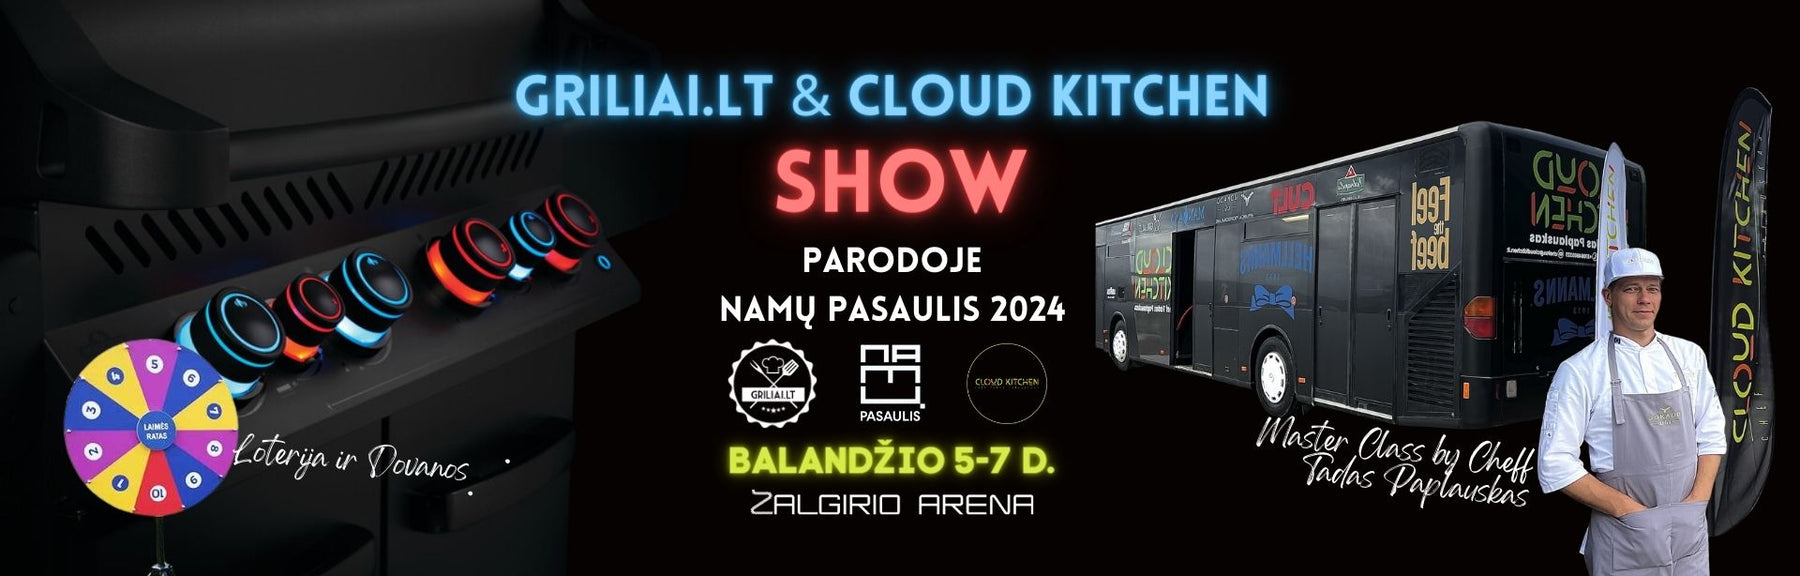 Griliai.lt & Cloud Kitchen Show Parodoje Namų Pasaulis 2024